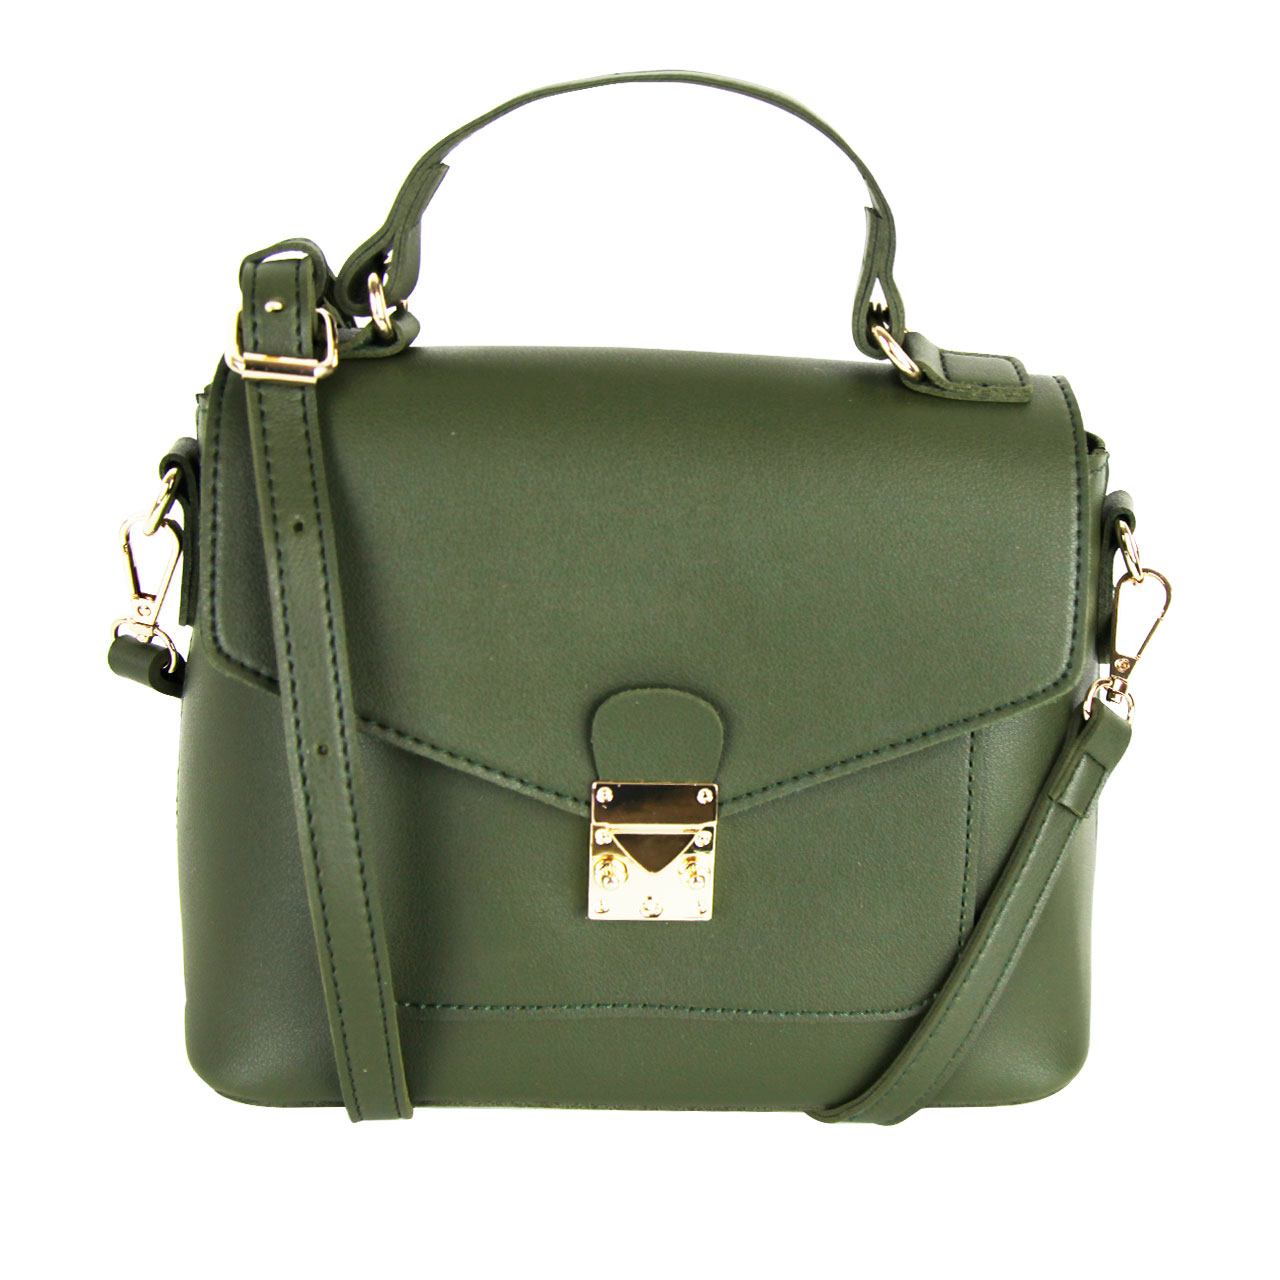 Modern Crossbody Brown/Golden/Smog Brown Rose/Green Strap Leather Satchel Shoulder Bag